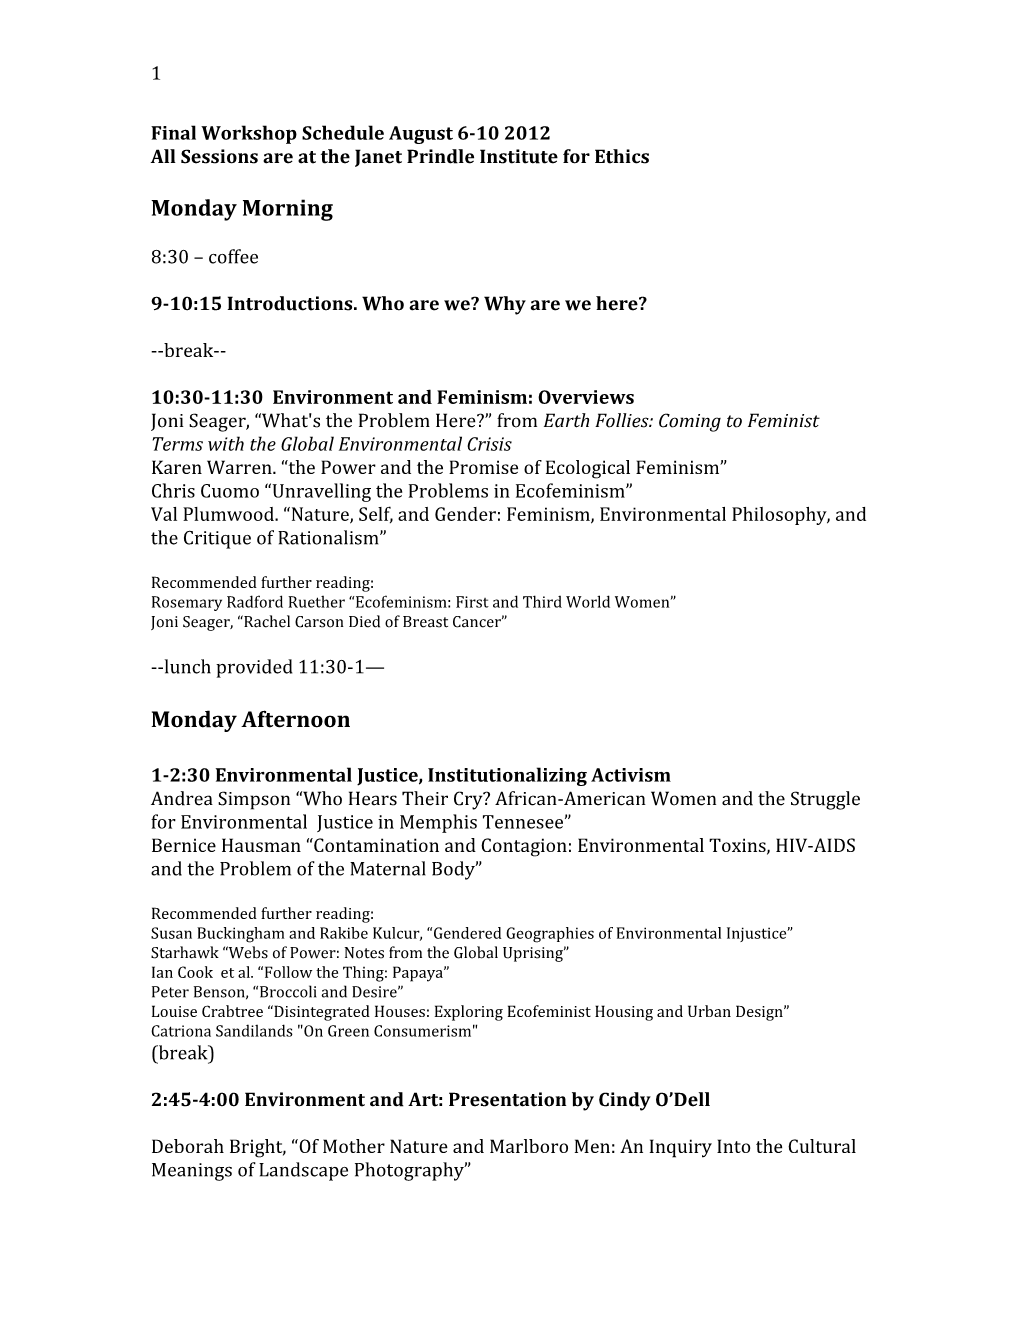 Final Workshop Schedule August 6-10 2012